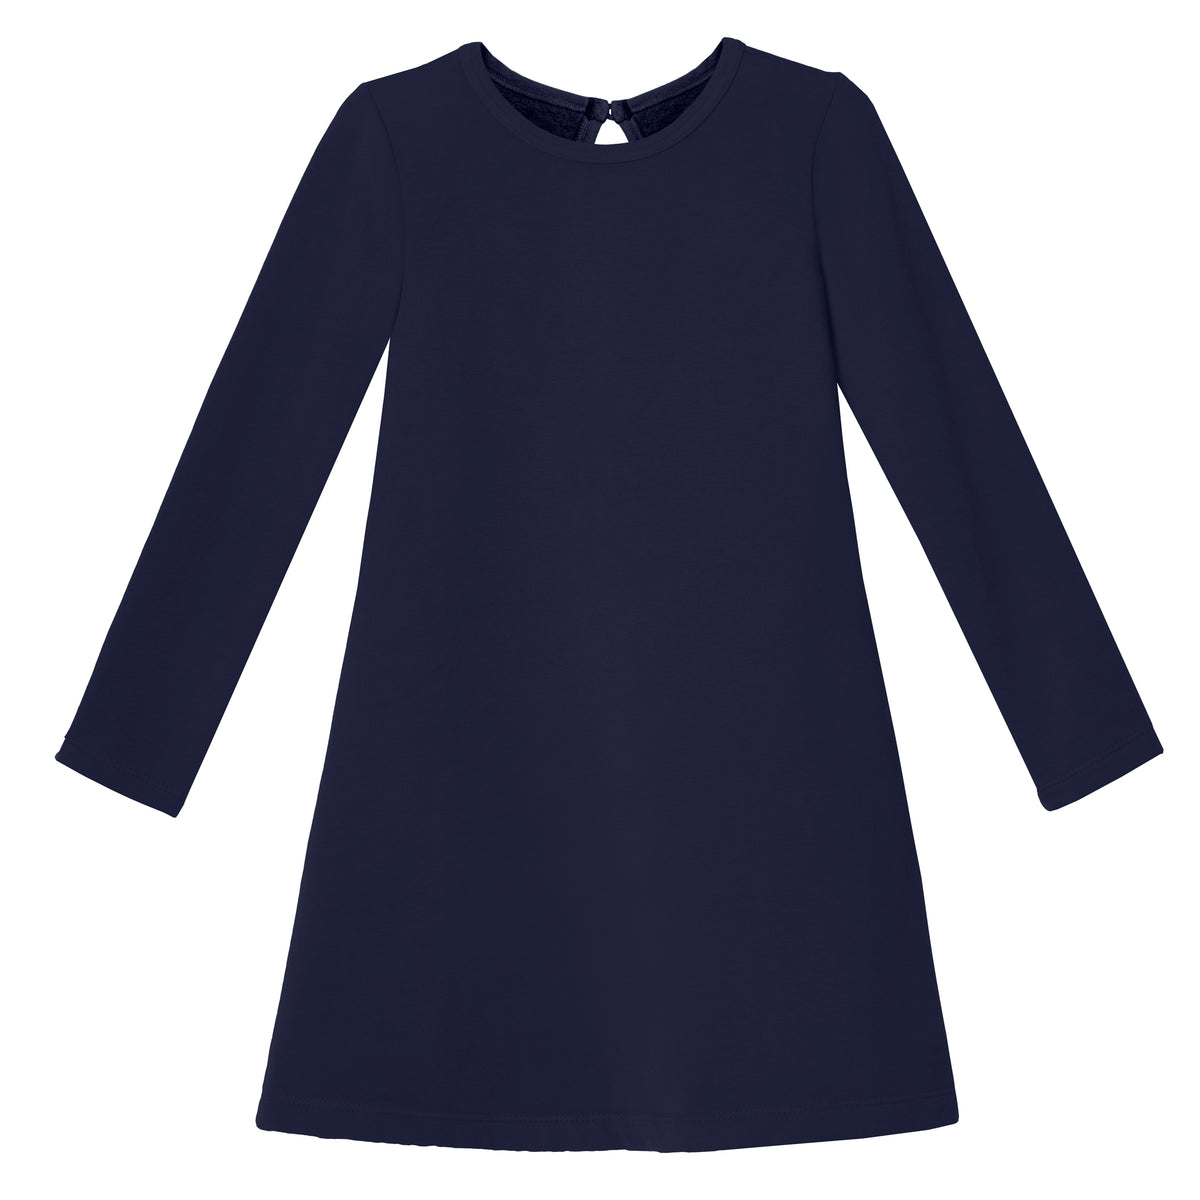 Girls Lightweight Soft Cotton Fleece A-Line Dress| Navy